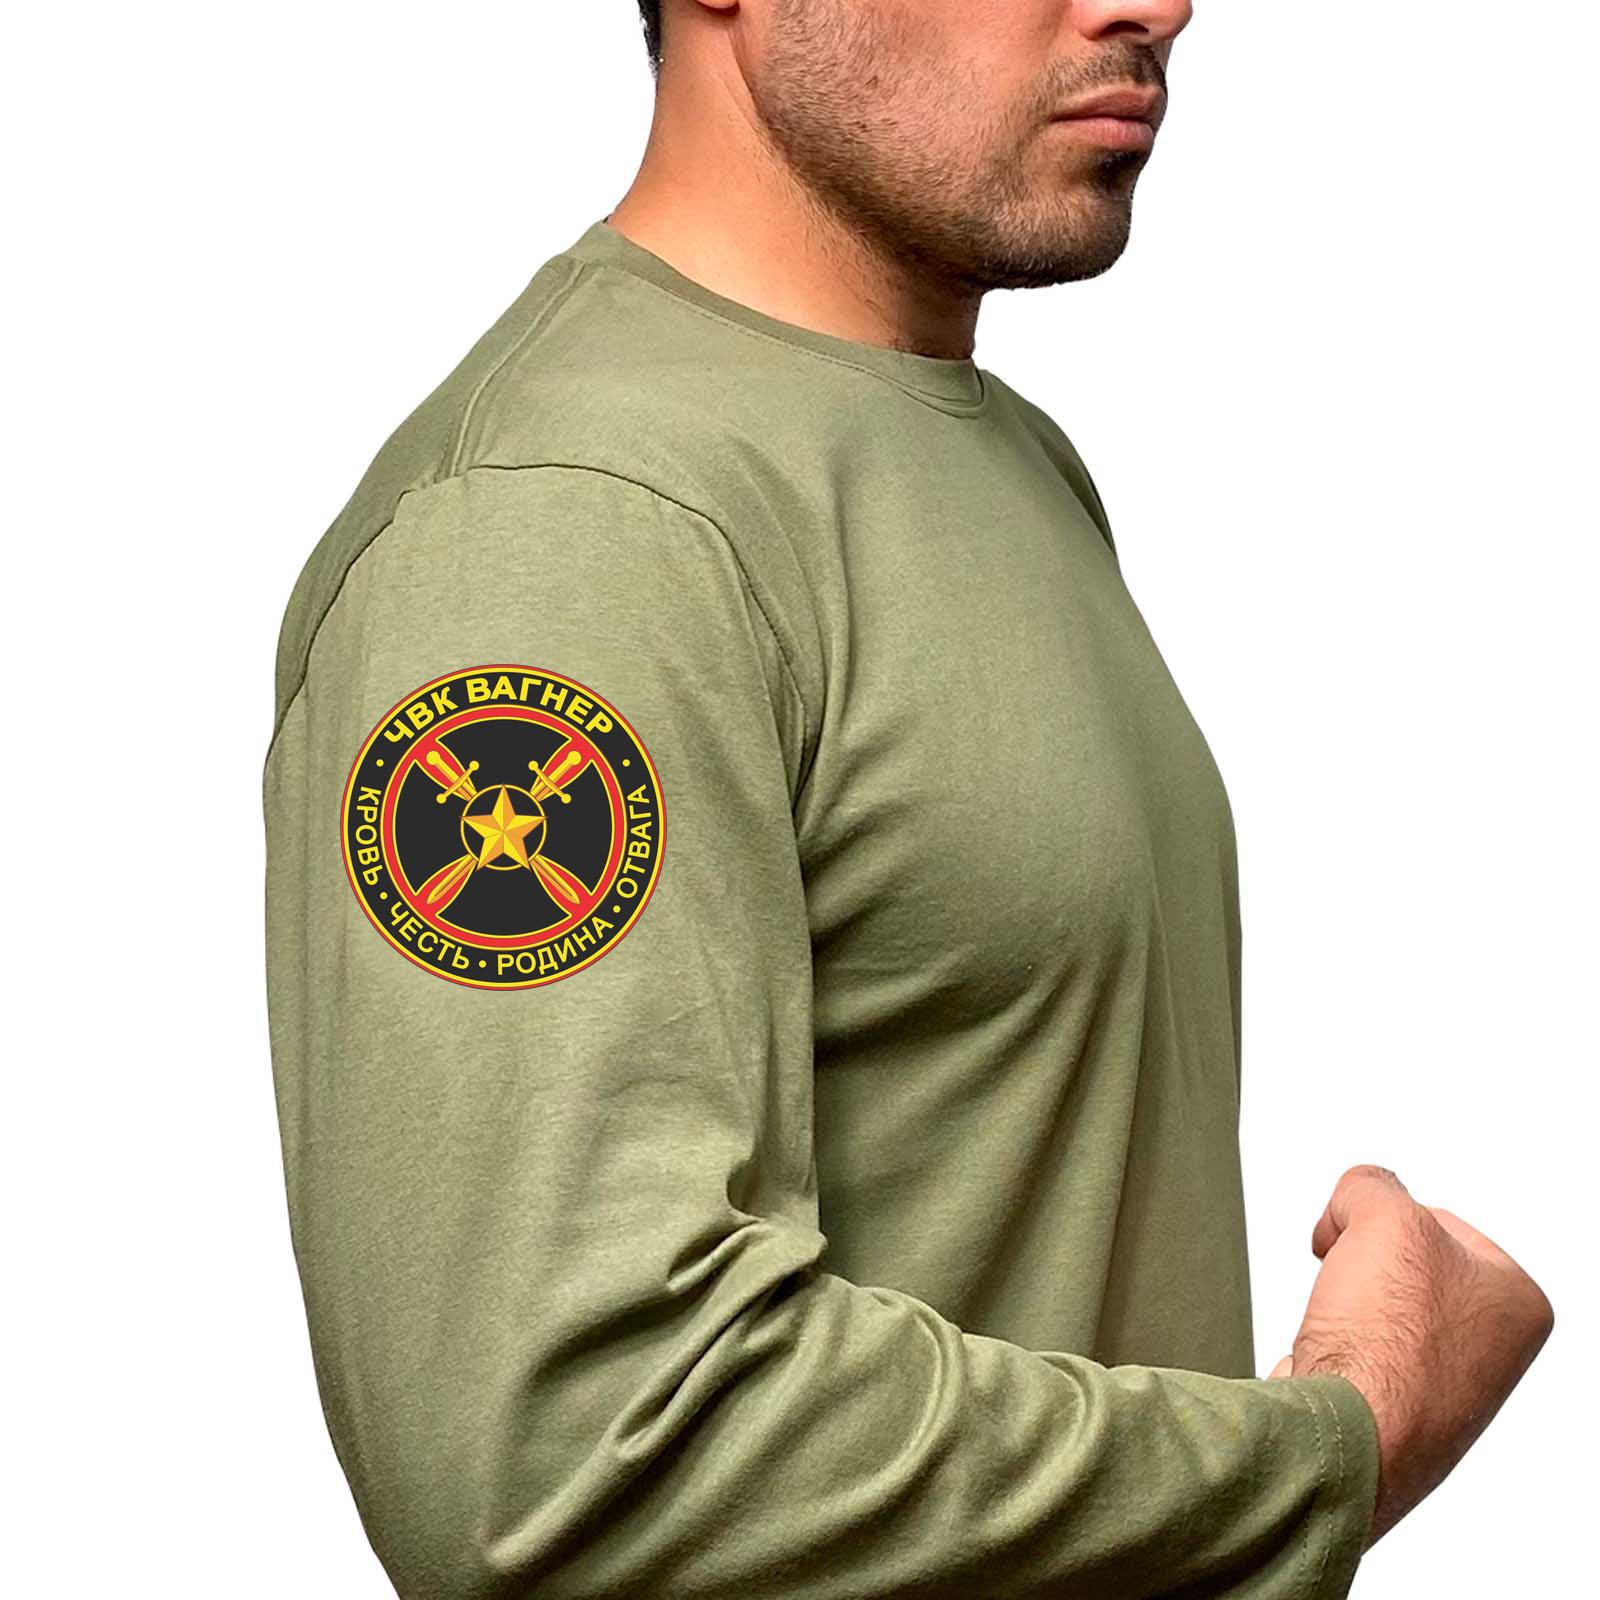 Купить мужскую оливковую футболку с длинным рукавом с термонаклейкой ЧВК Вагнер онлайн